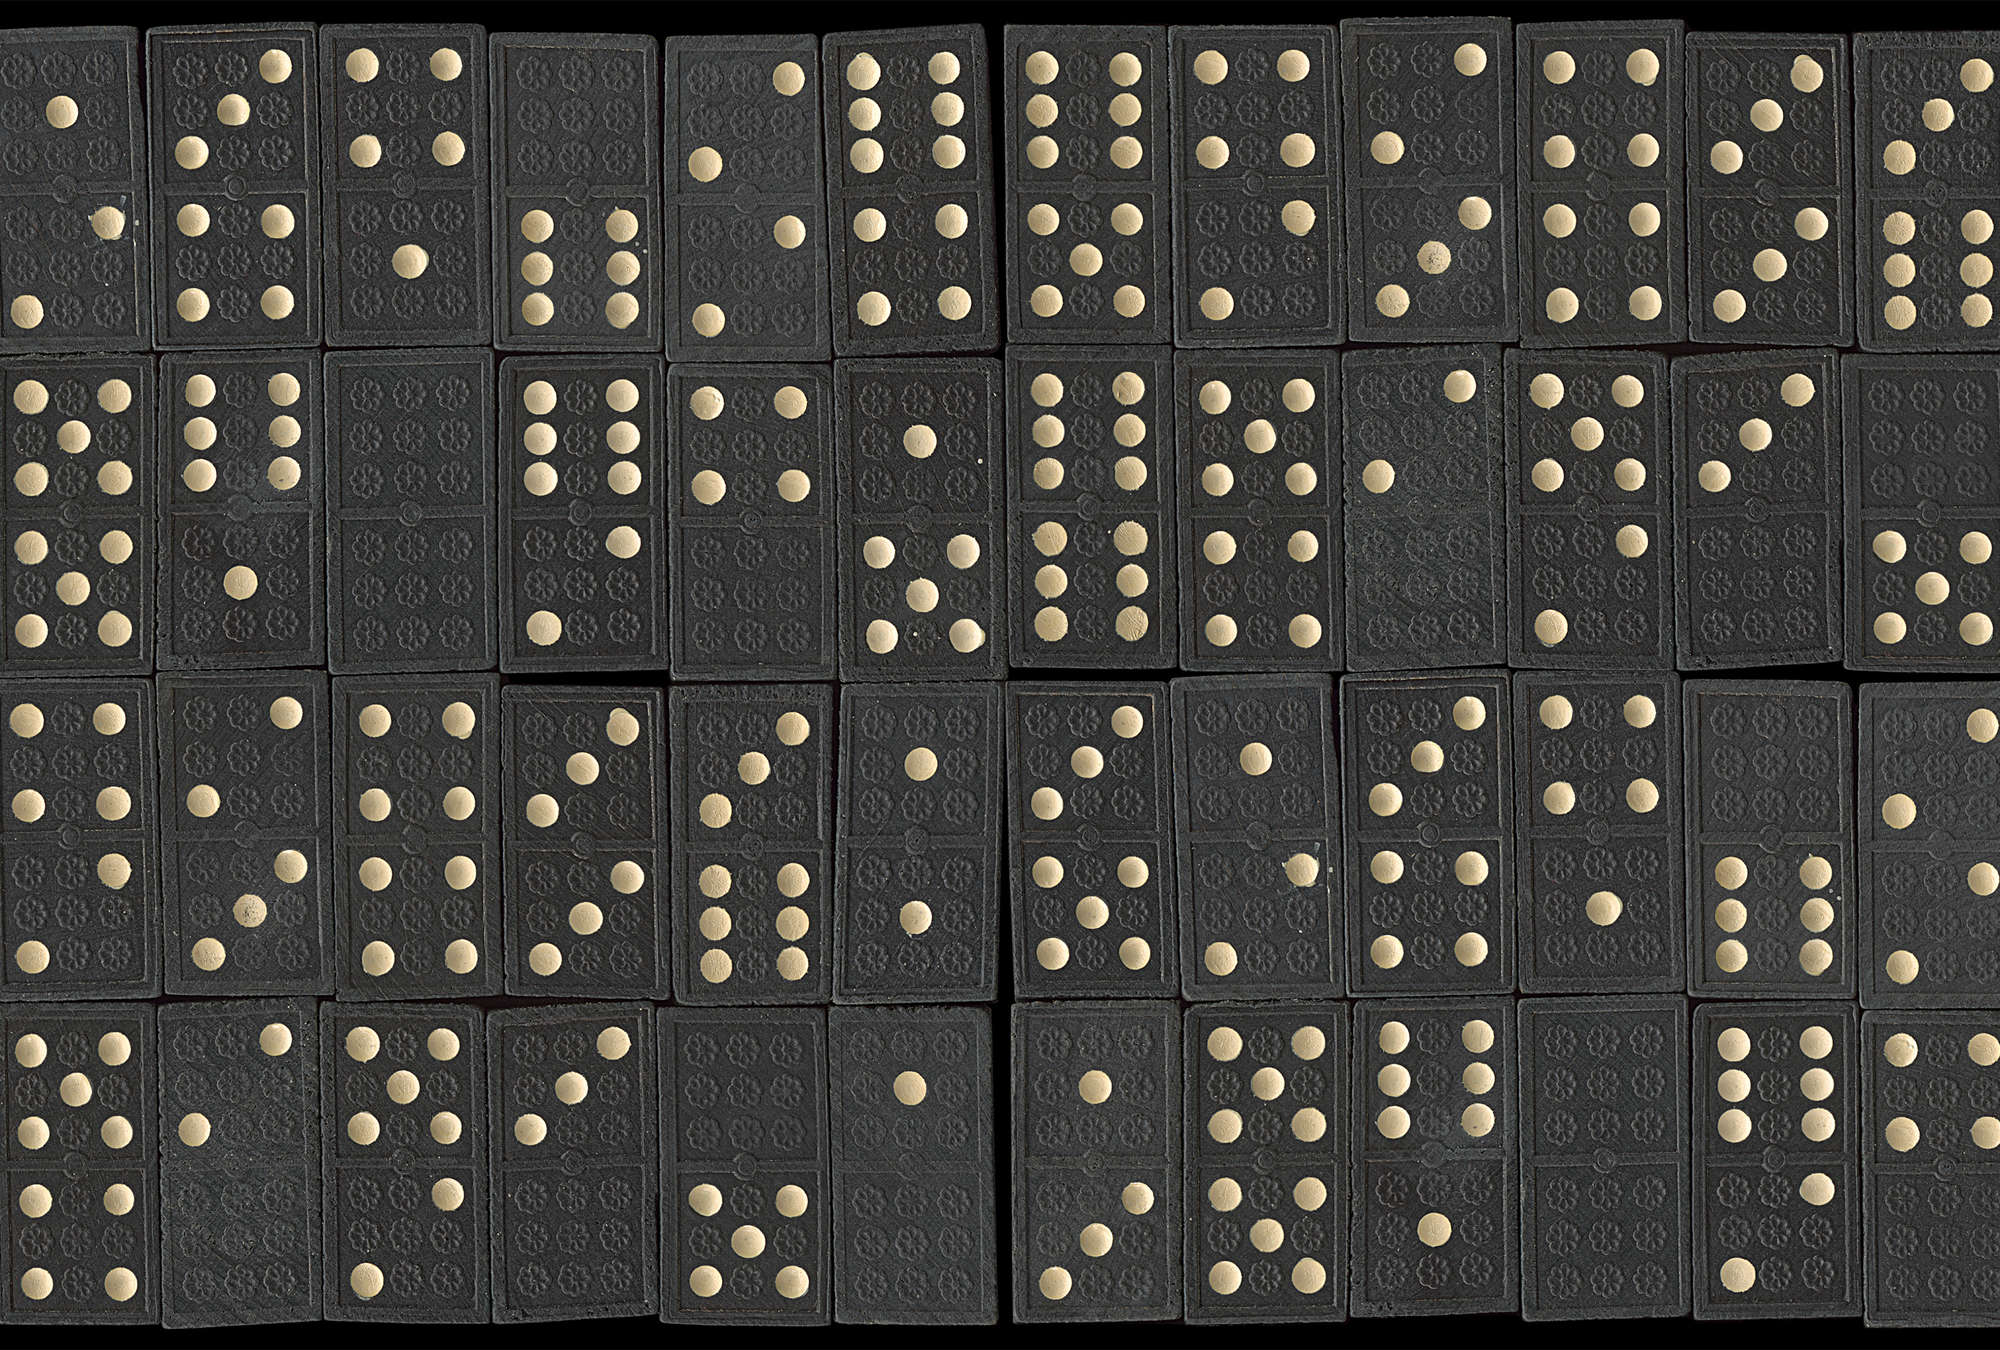             Muurschildering domino's retro token patroon
        